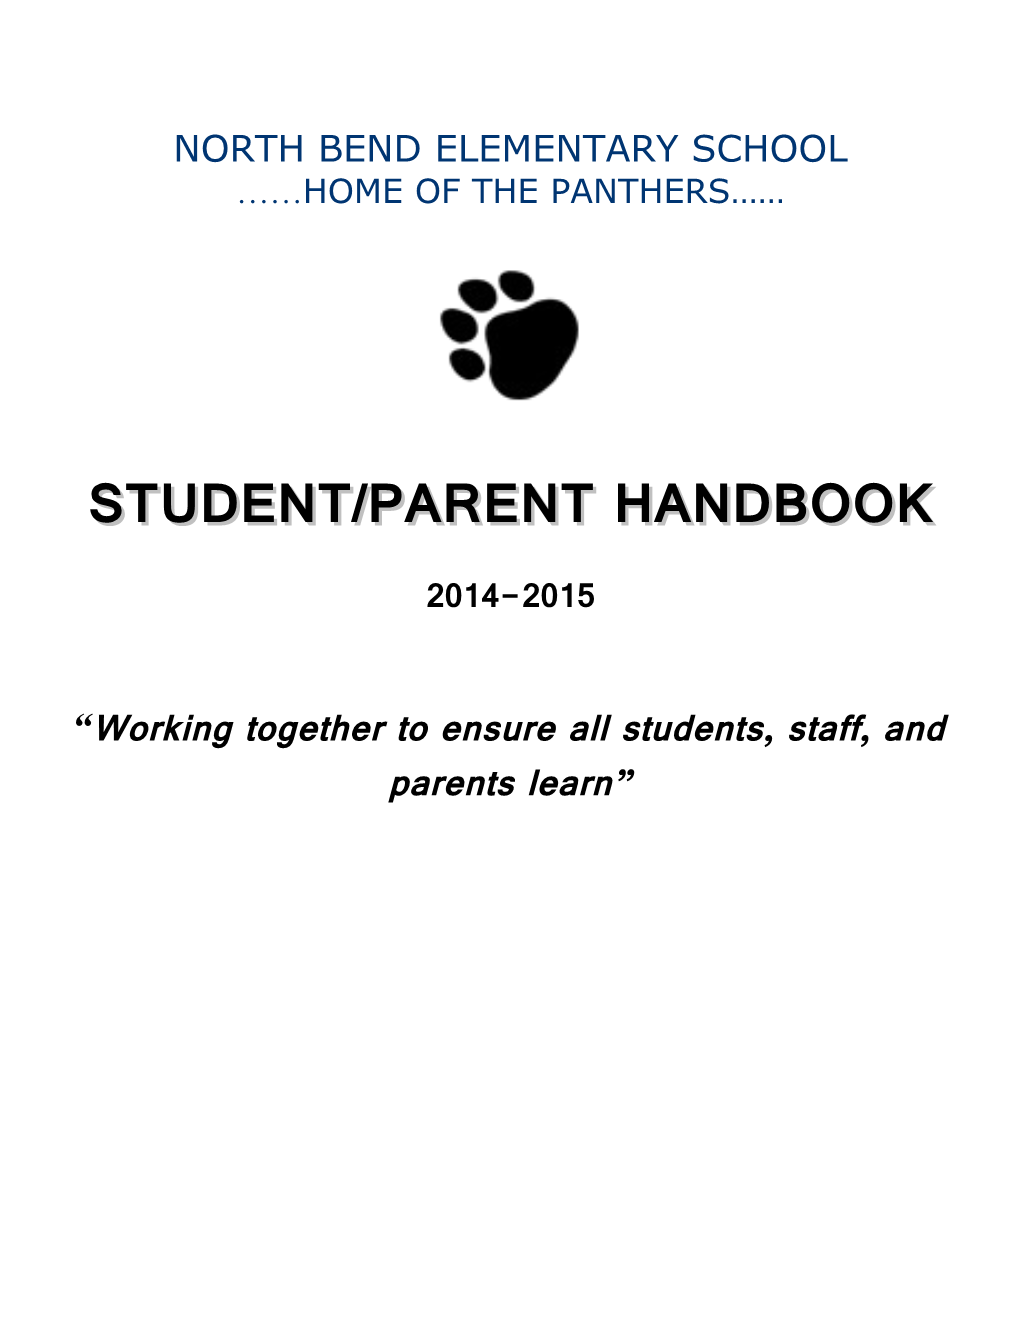 Handbook Parent Letter